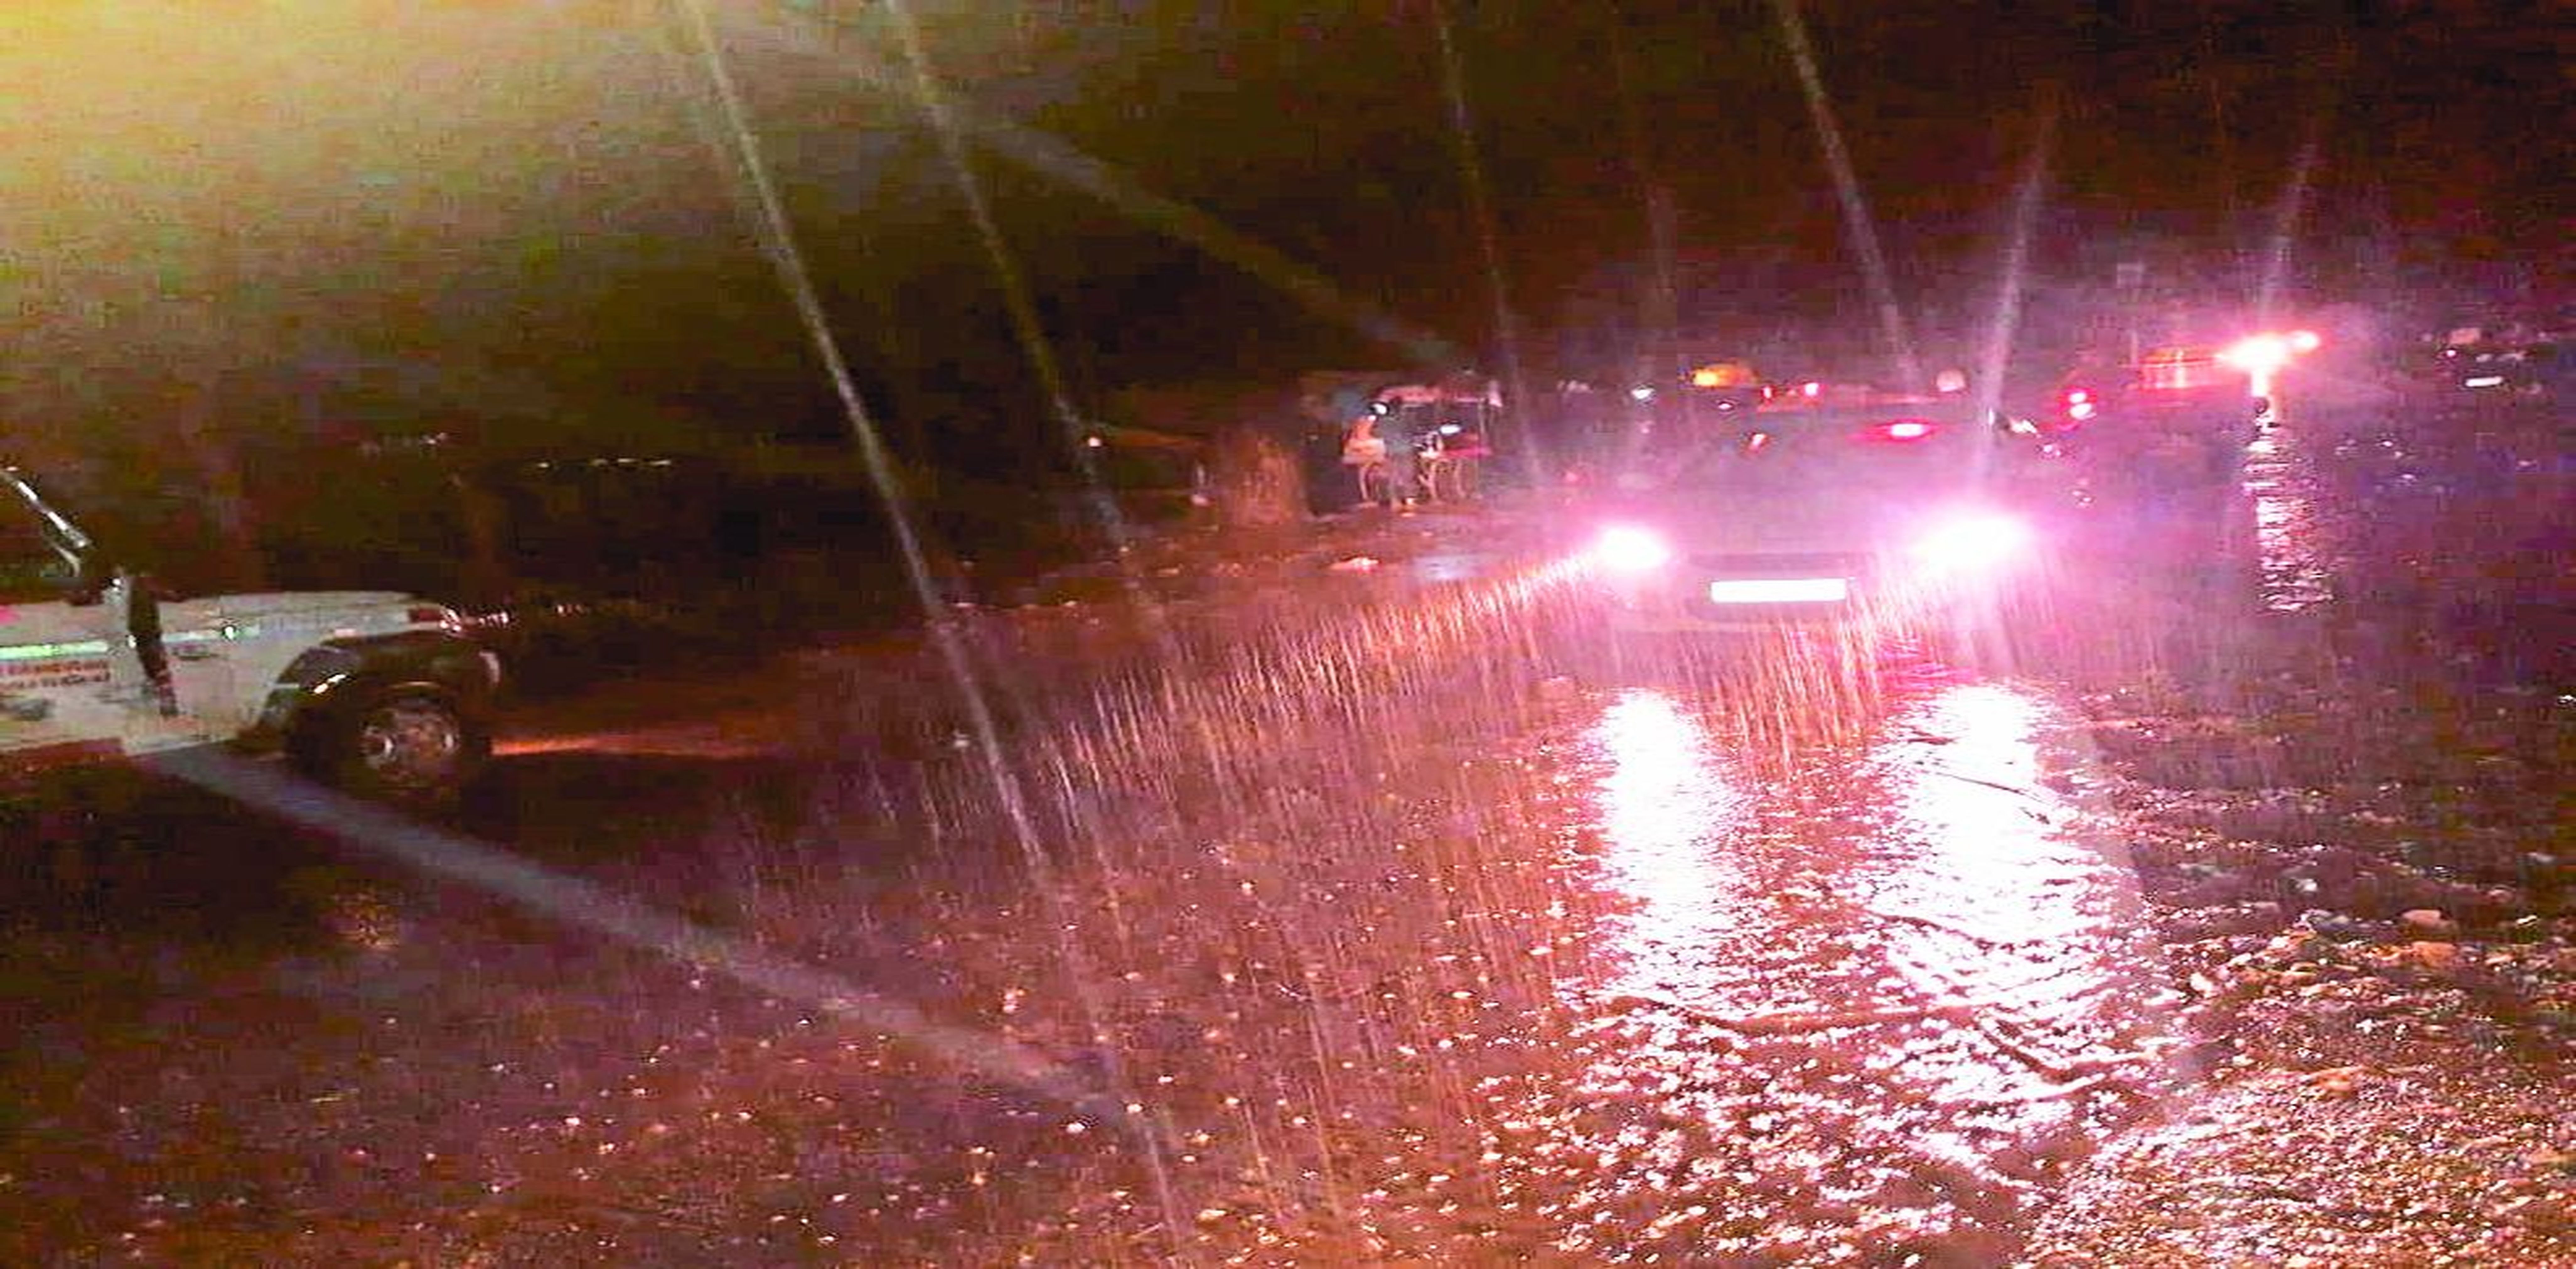 बारिश के दौरान गुजरते वाहन।